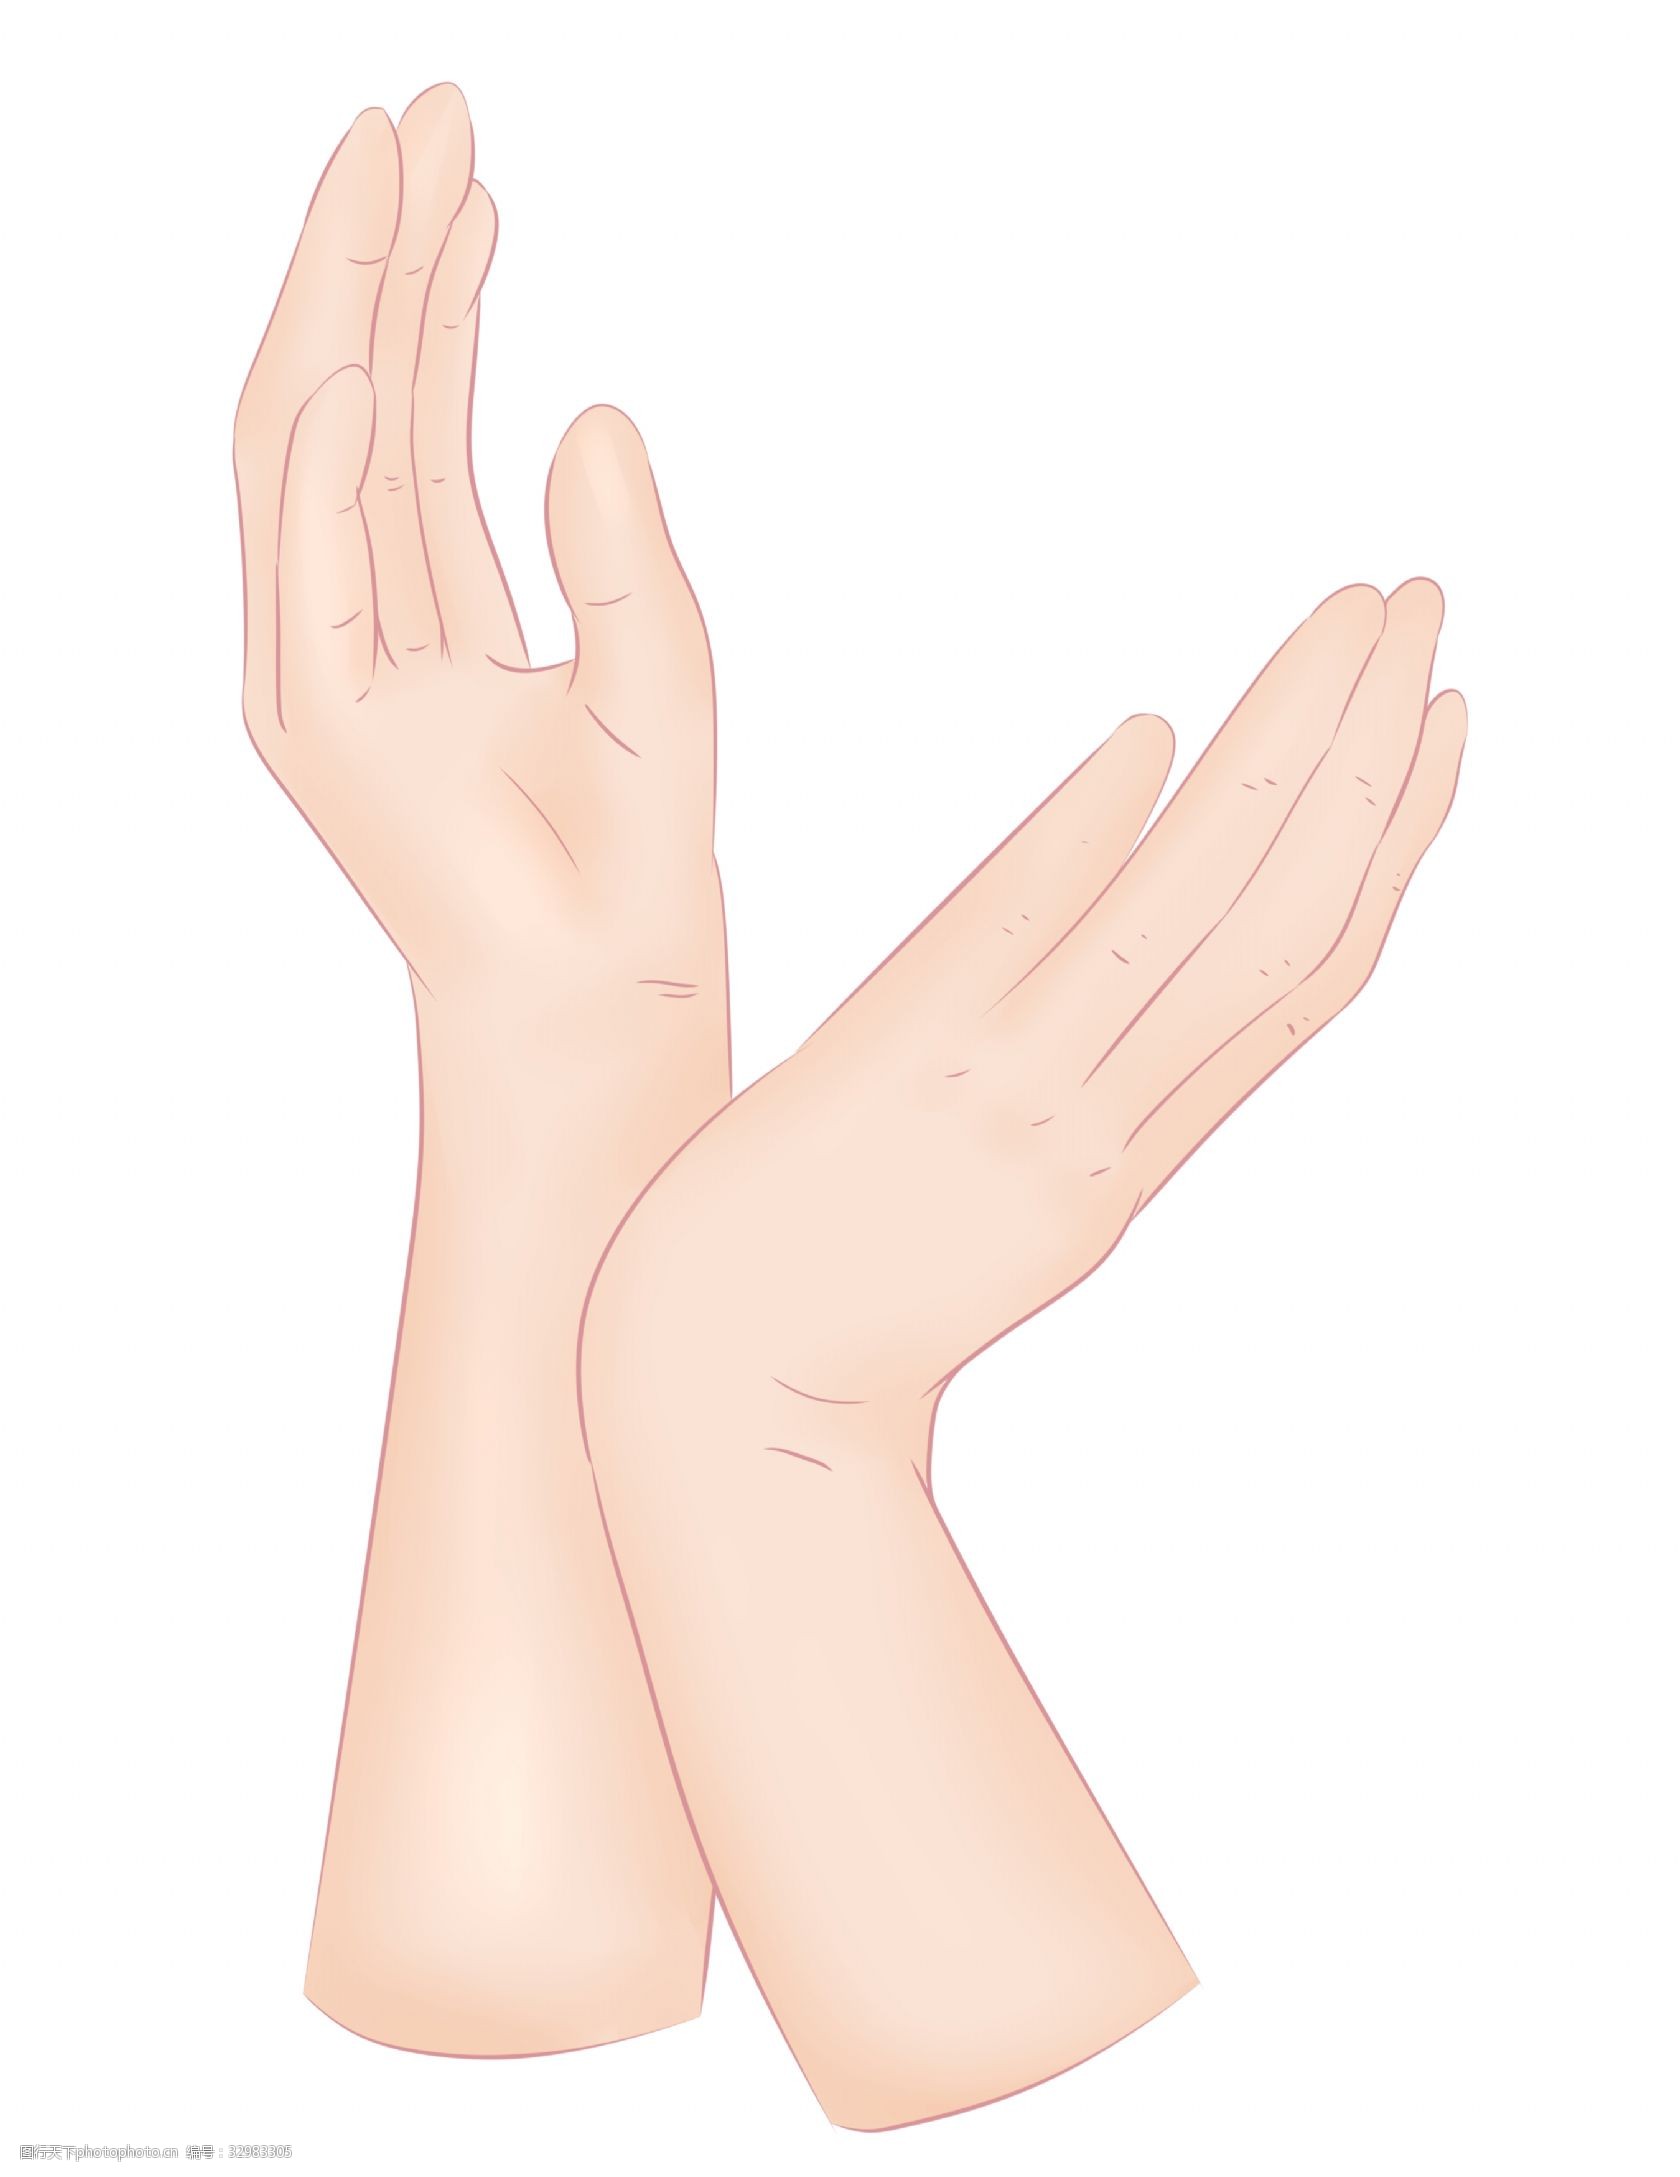 转手的手势 卡通插画 手势的插画 肢体语言 哑语 摆姿势 手语 好看的